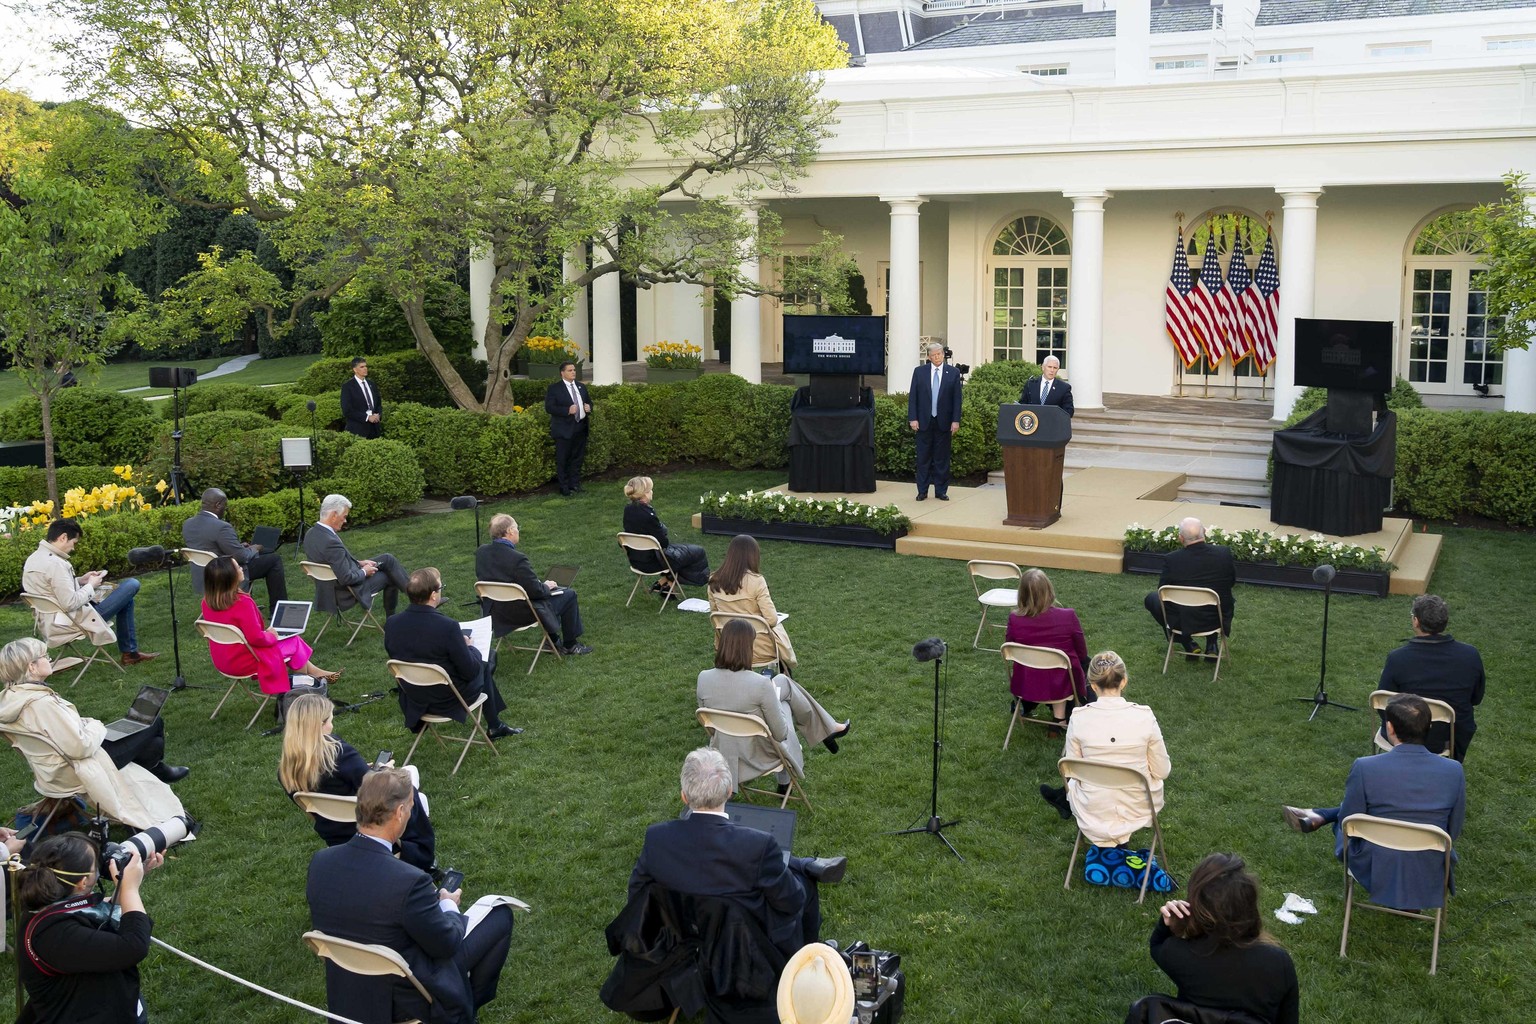 Journalisten bei einer Pressekonferenz im Weißen Haus. Am Freitag saßen die Reporter wesentlich enger zusammen, als auf diesem Bild zu sehen ist.